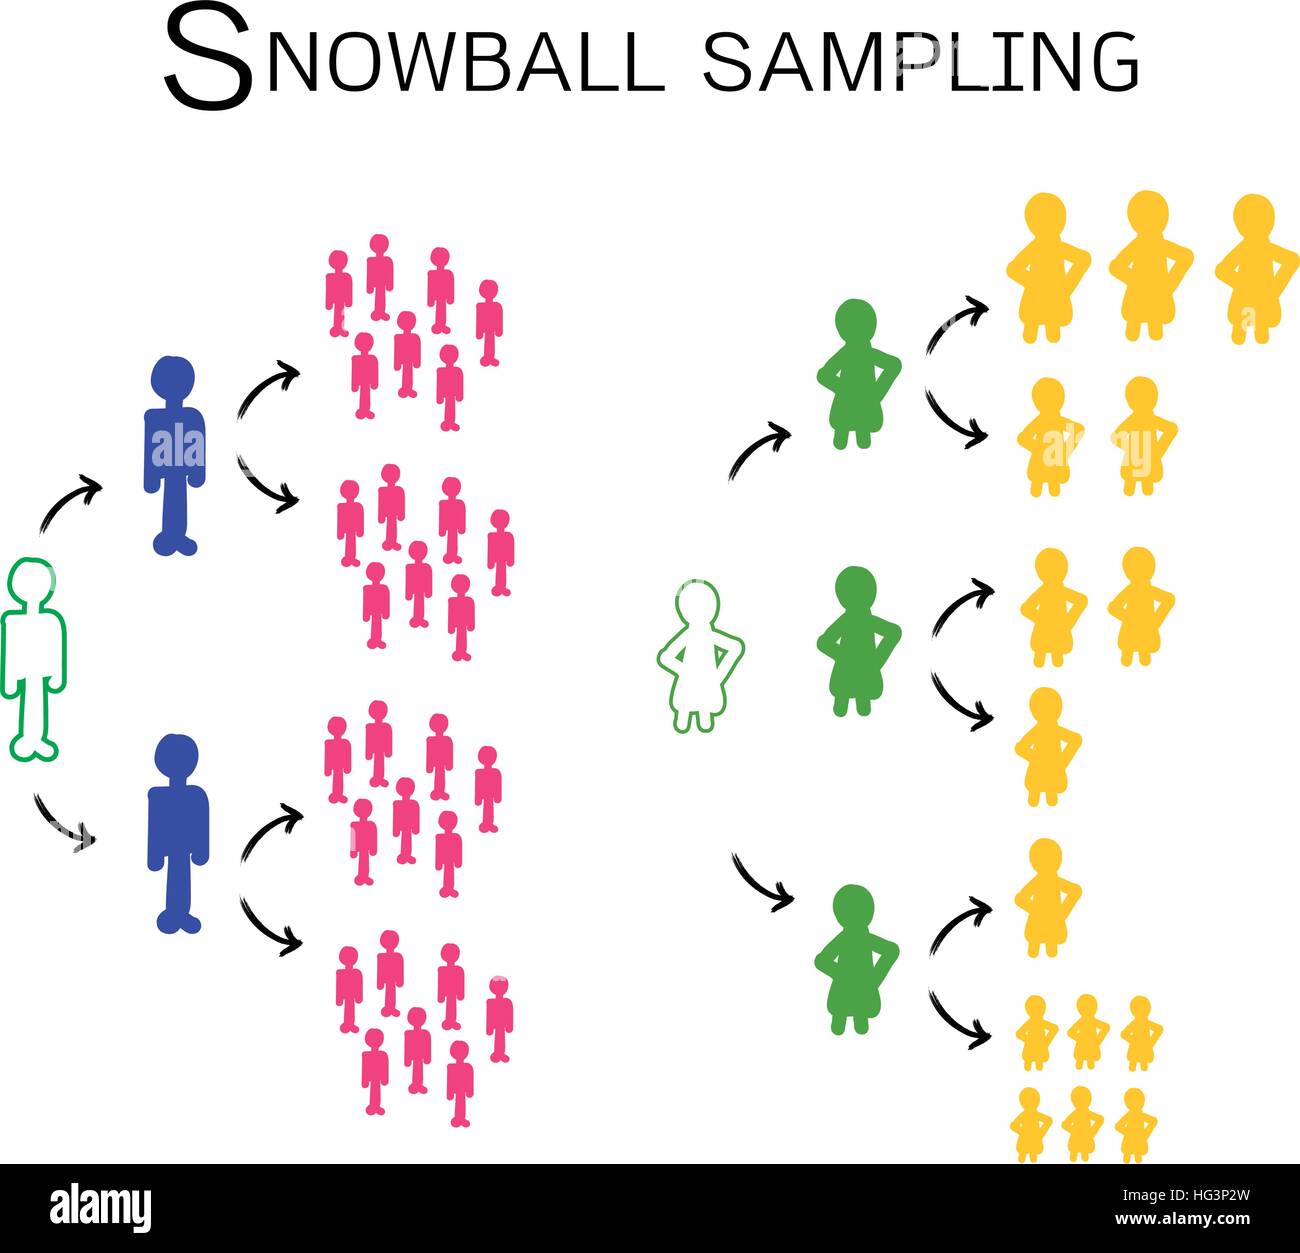 Business et marketing social ou processus de recherche, l'échantillonnage en boule de neige est un Non-Probability la technique d'échantillonnage en recherche qualitative. Illustration de Vecteur